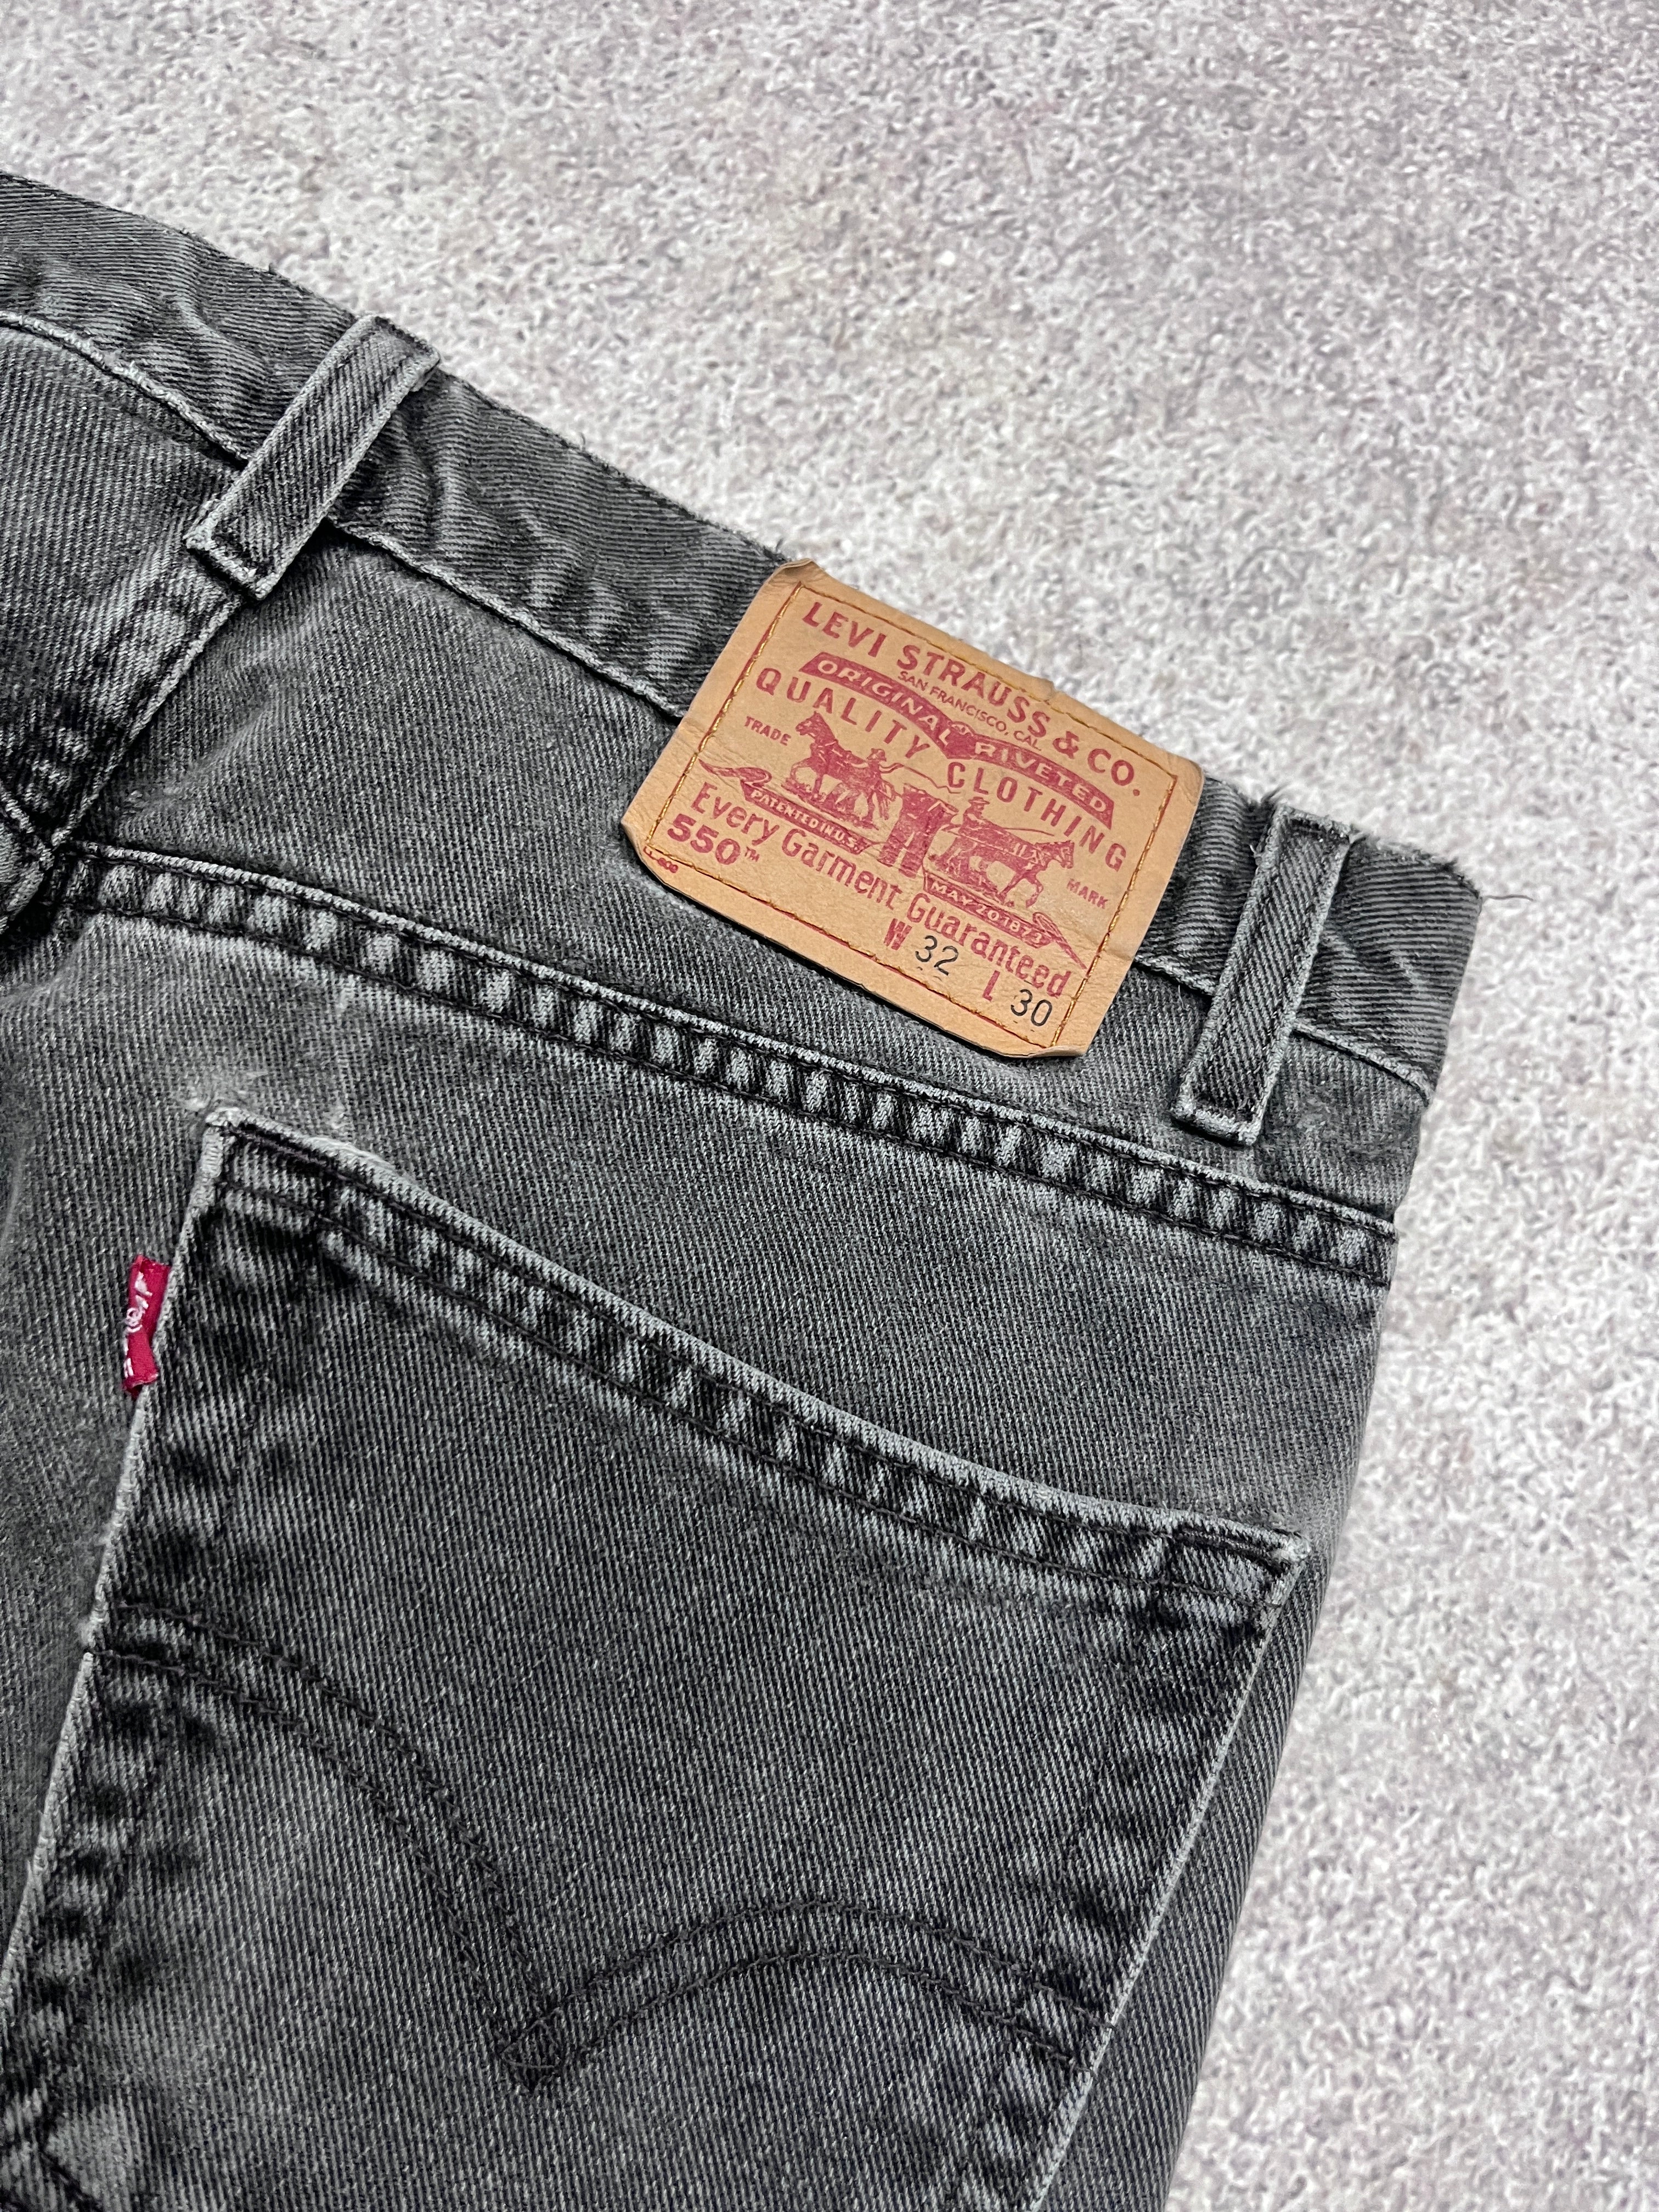 Vintage Levi 550 Denim Jeans // W32 L30 - RHAGHOUSE VINTAGE